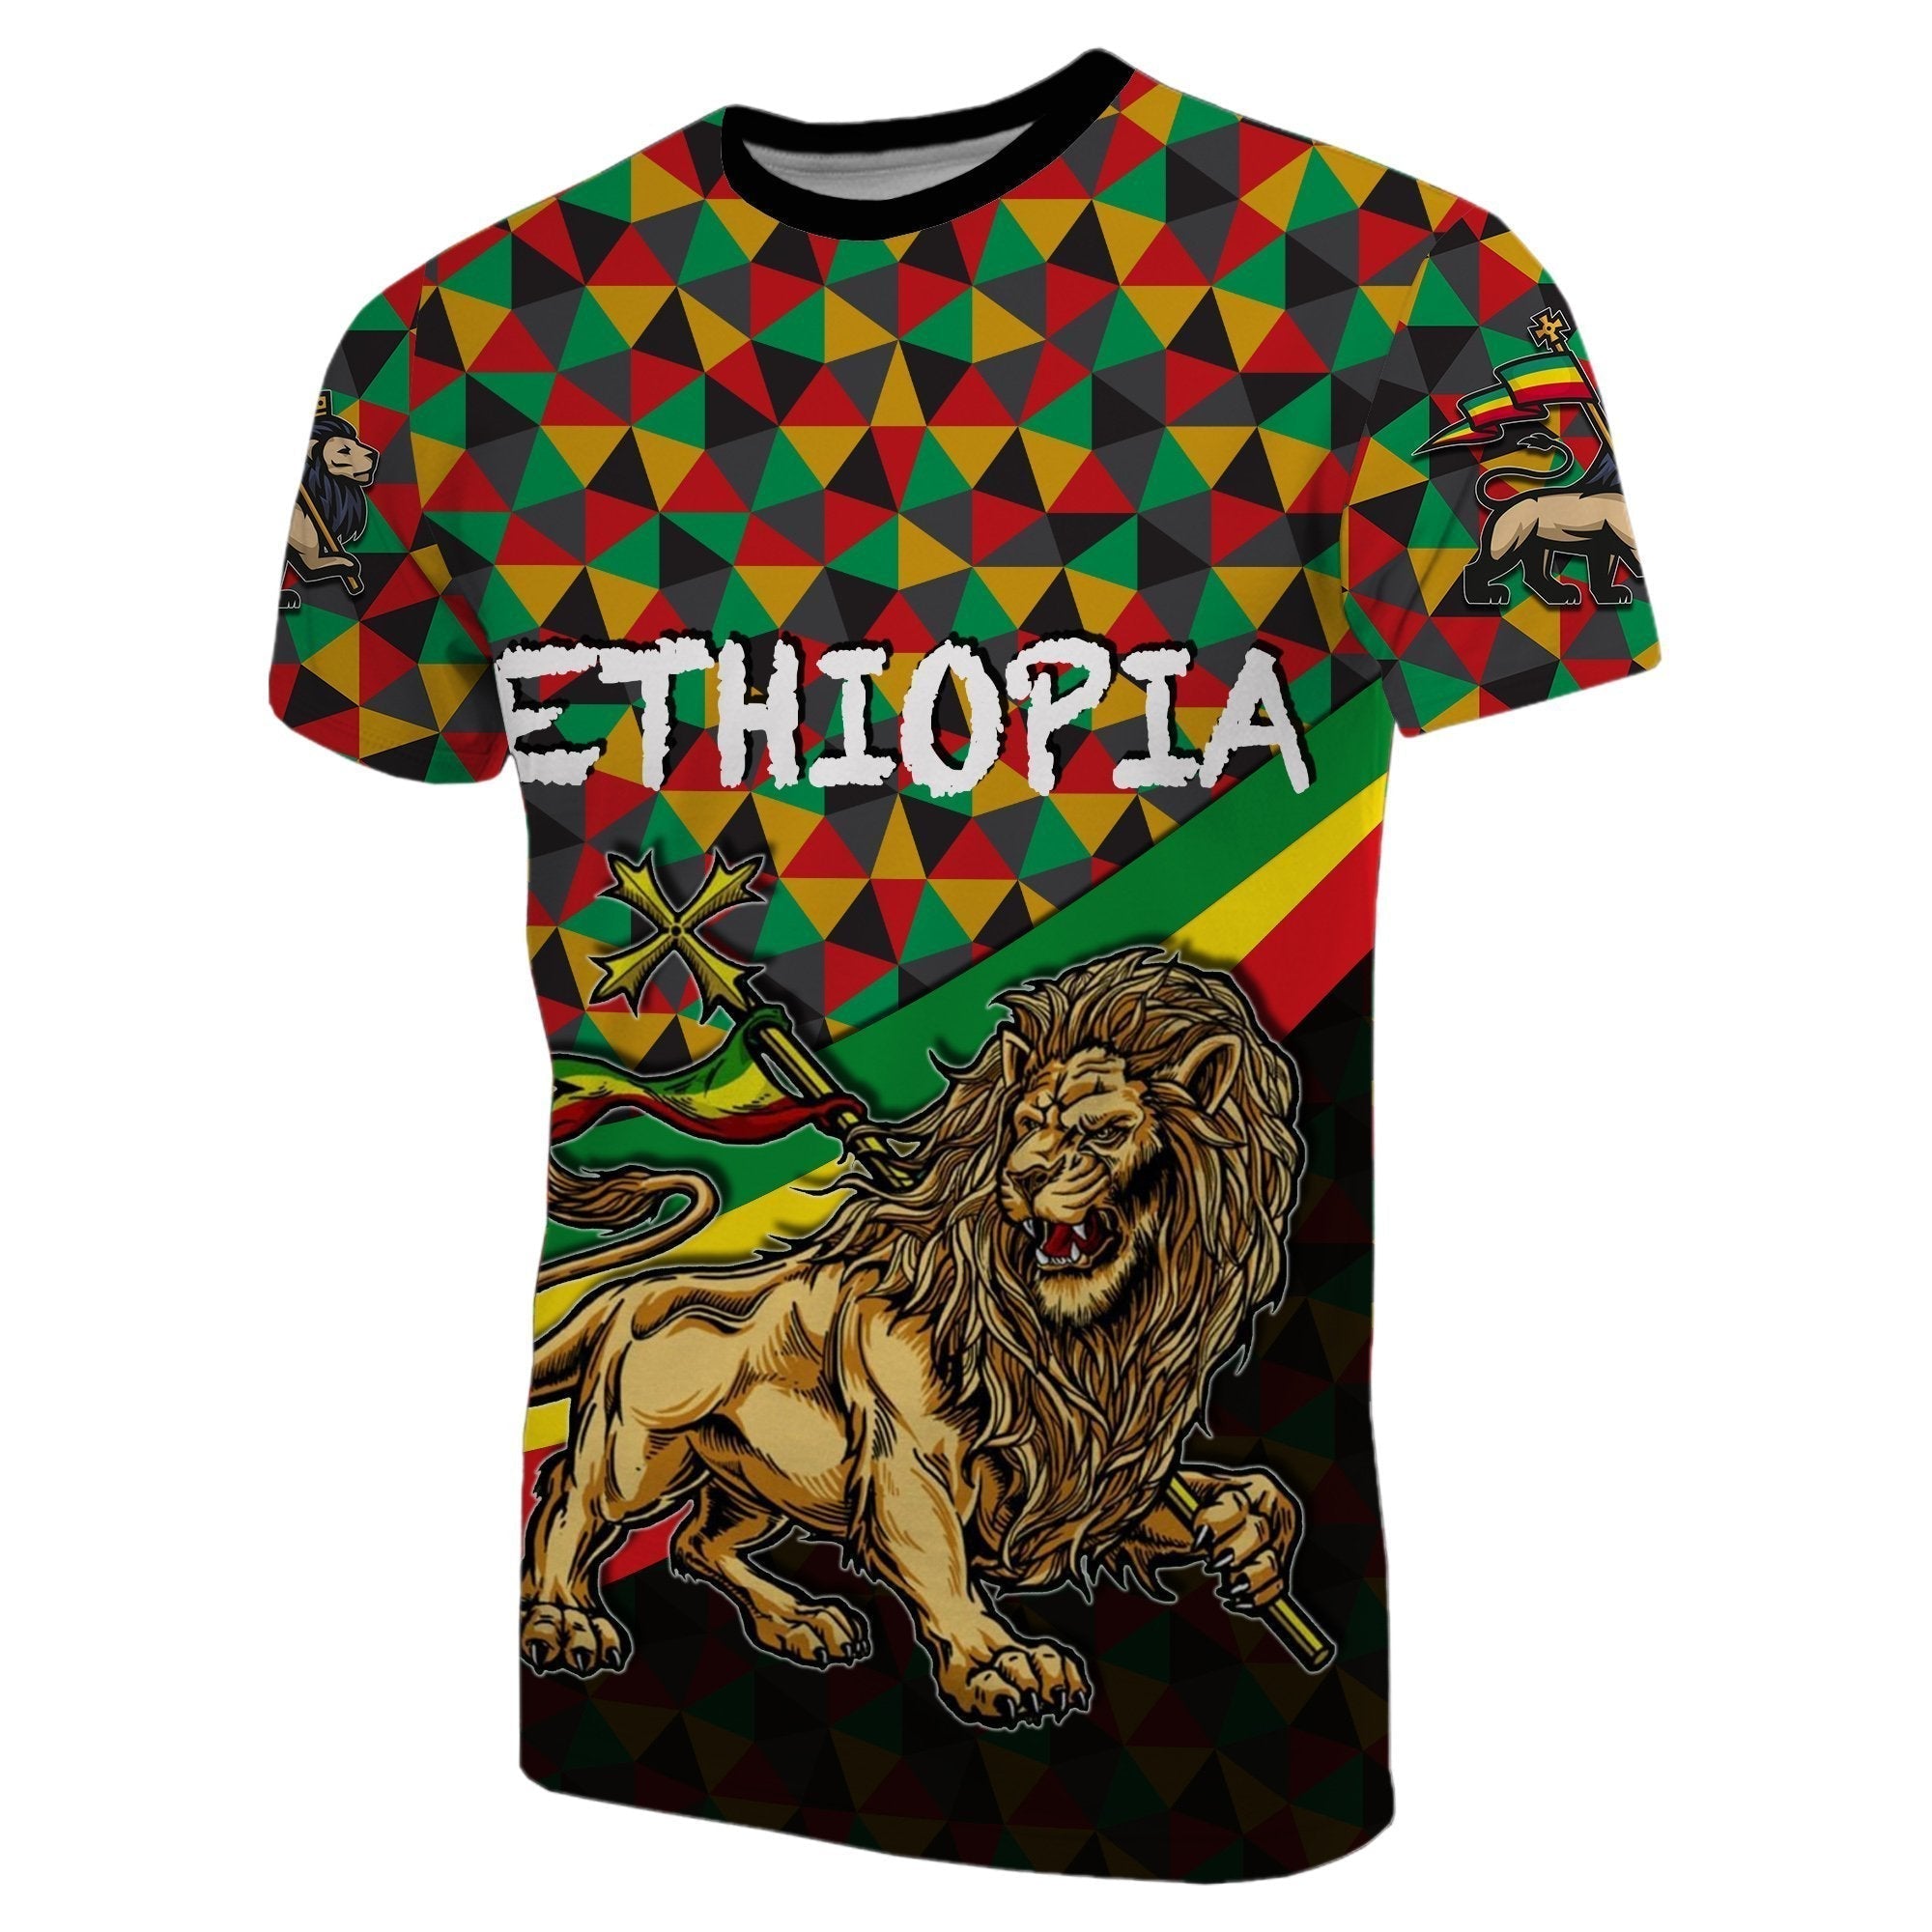 ethiopia-t-shirt-lion-of-judah-rasta-patterns-no2